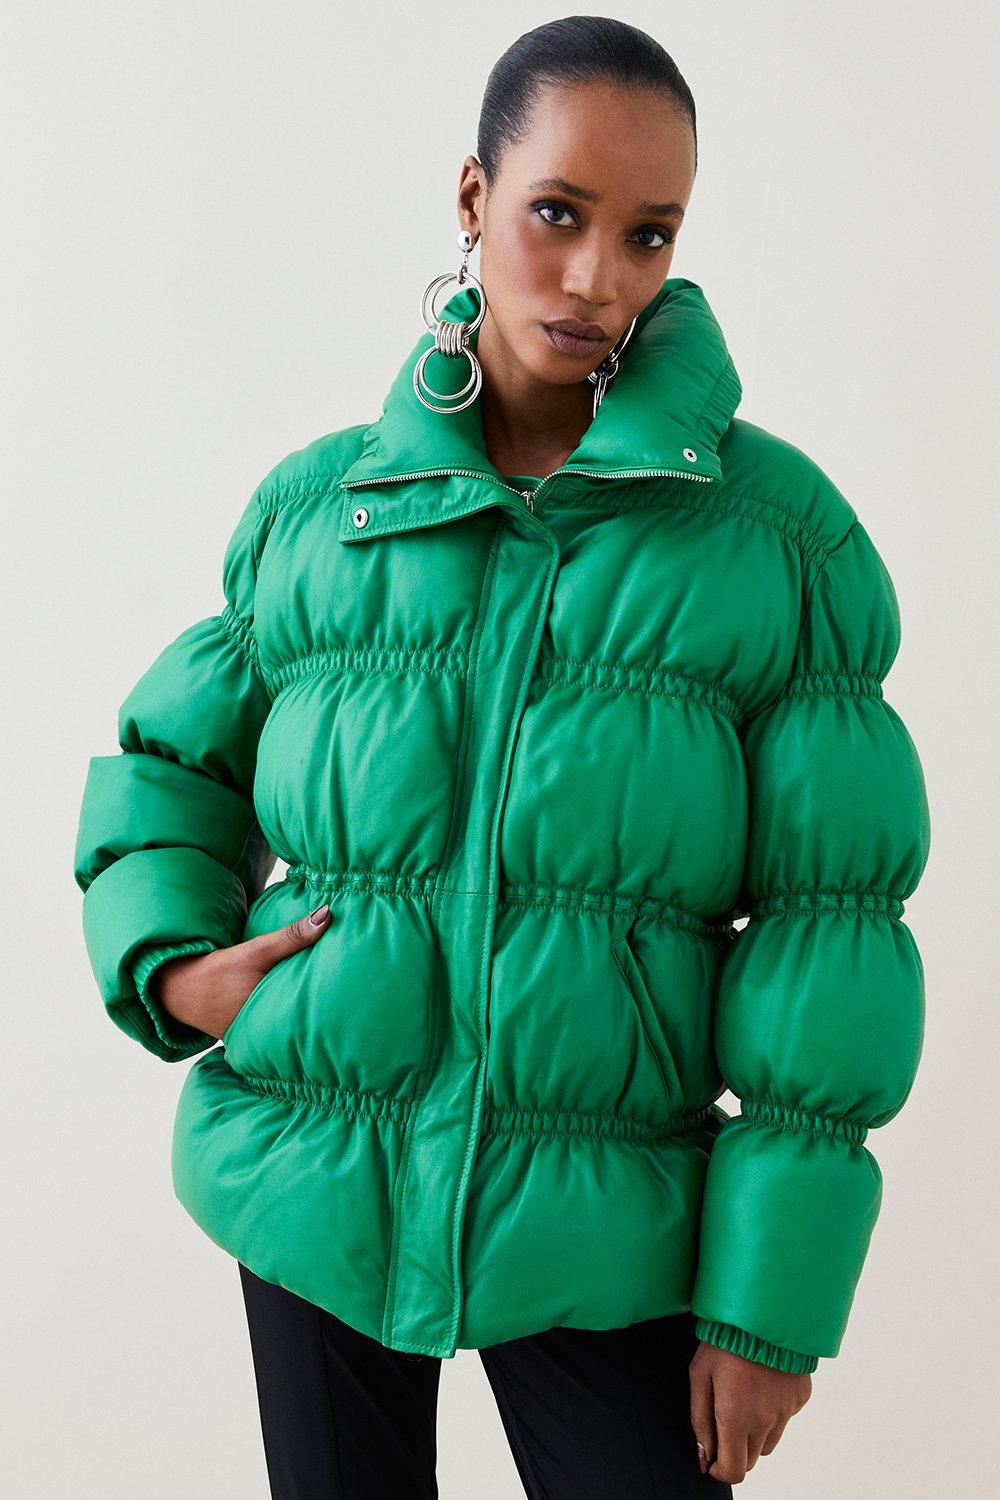 Karen Millen Women's Oversized Puffer Coat